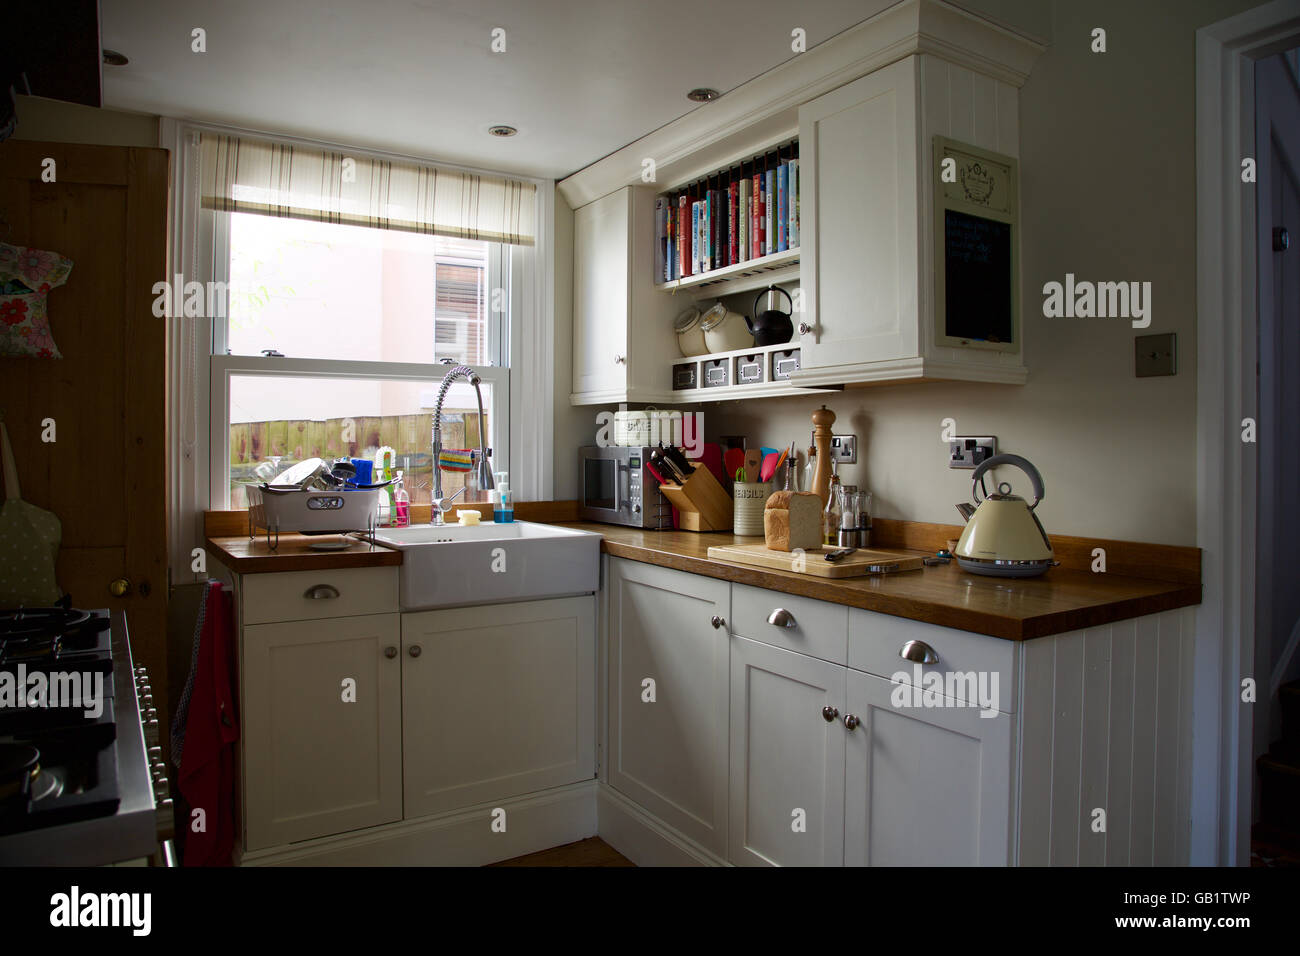 Viktorianische Kochnische mit Fenster in echte familiäre Haus Wasserkocher Laib Brot Board Creme Waschbecken Schränke Arbeitsplatte Frühstück toast Stockfoto